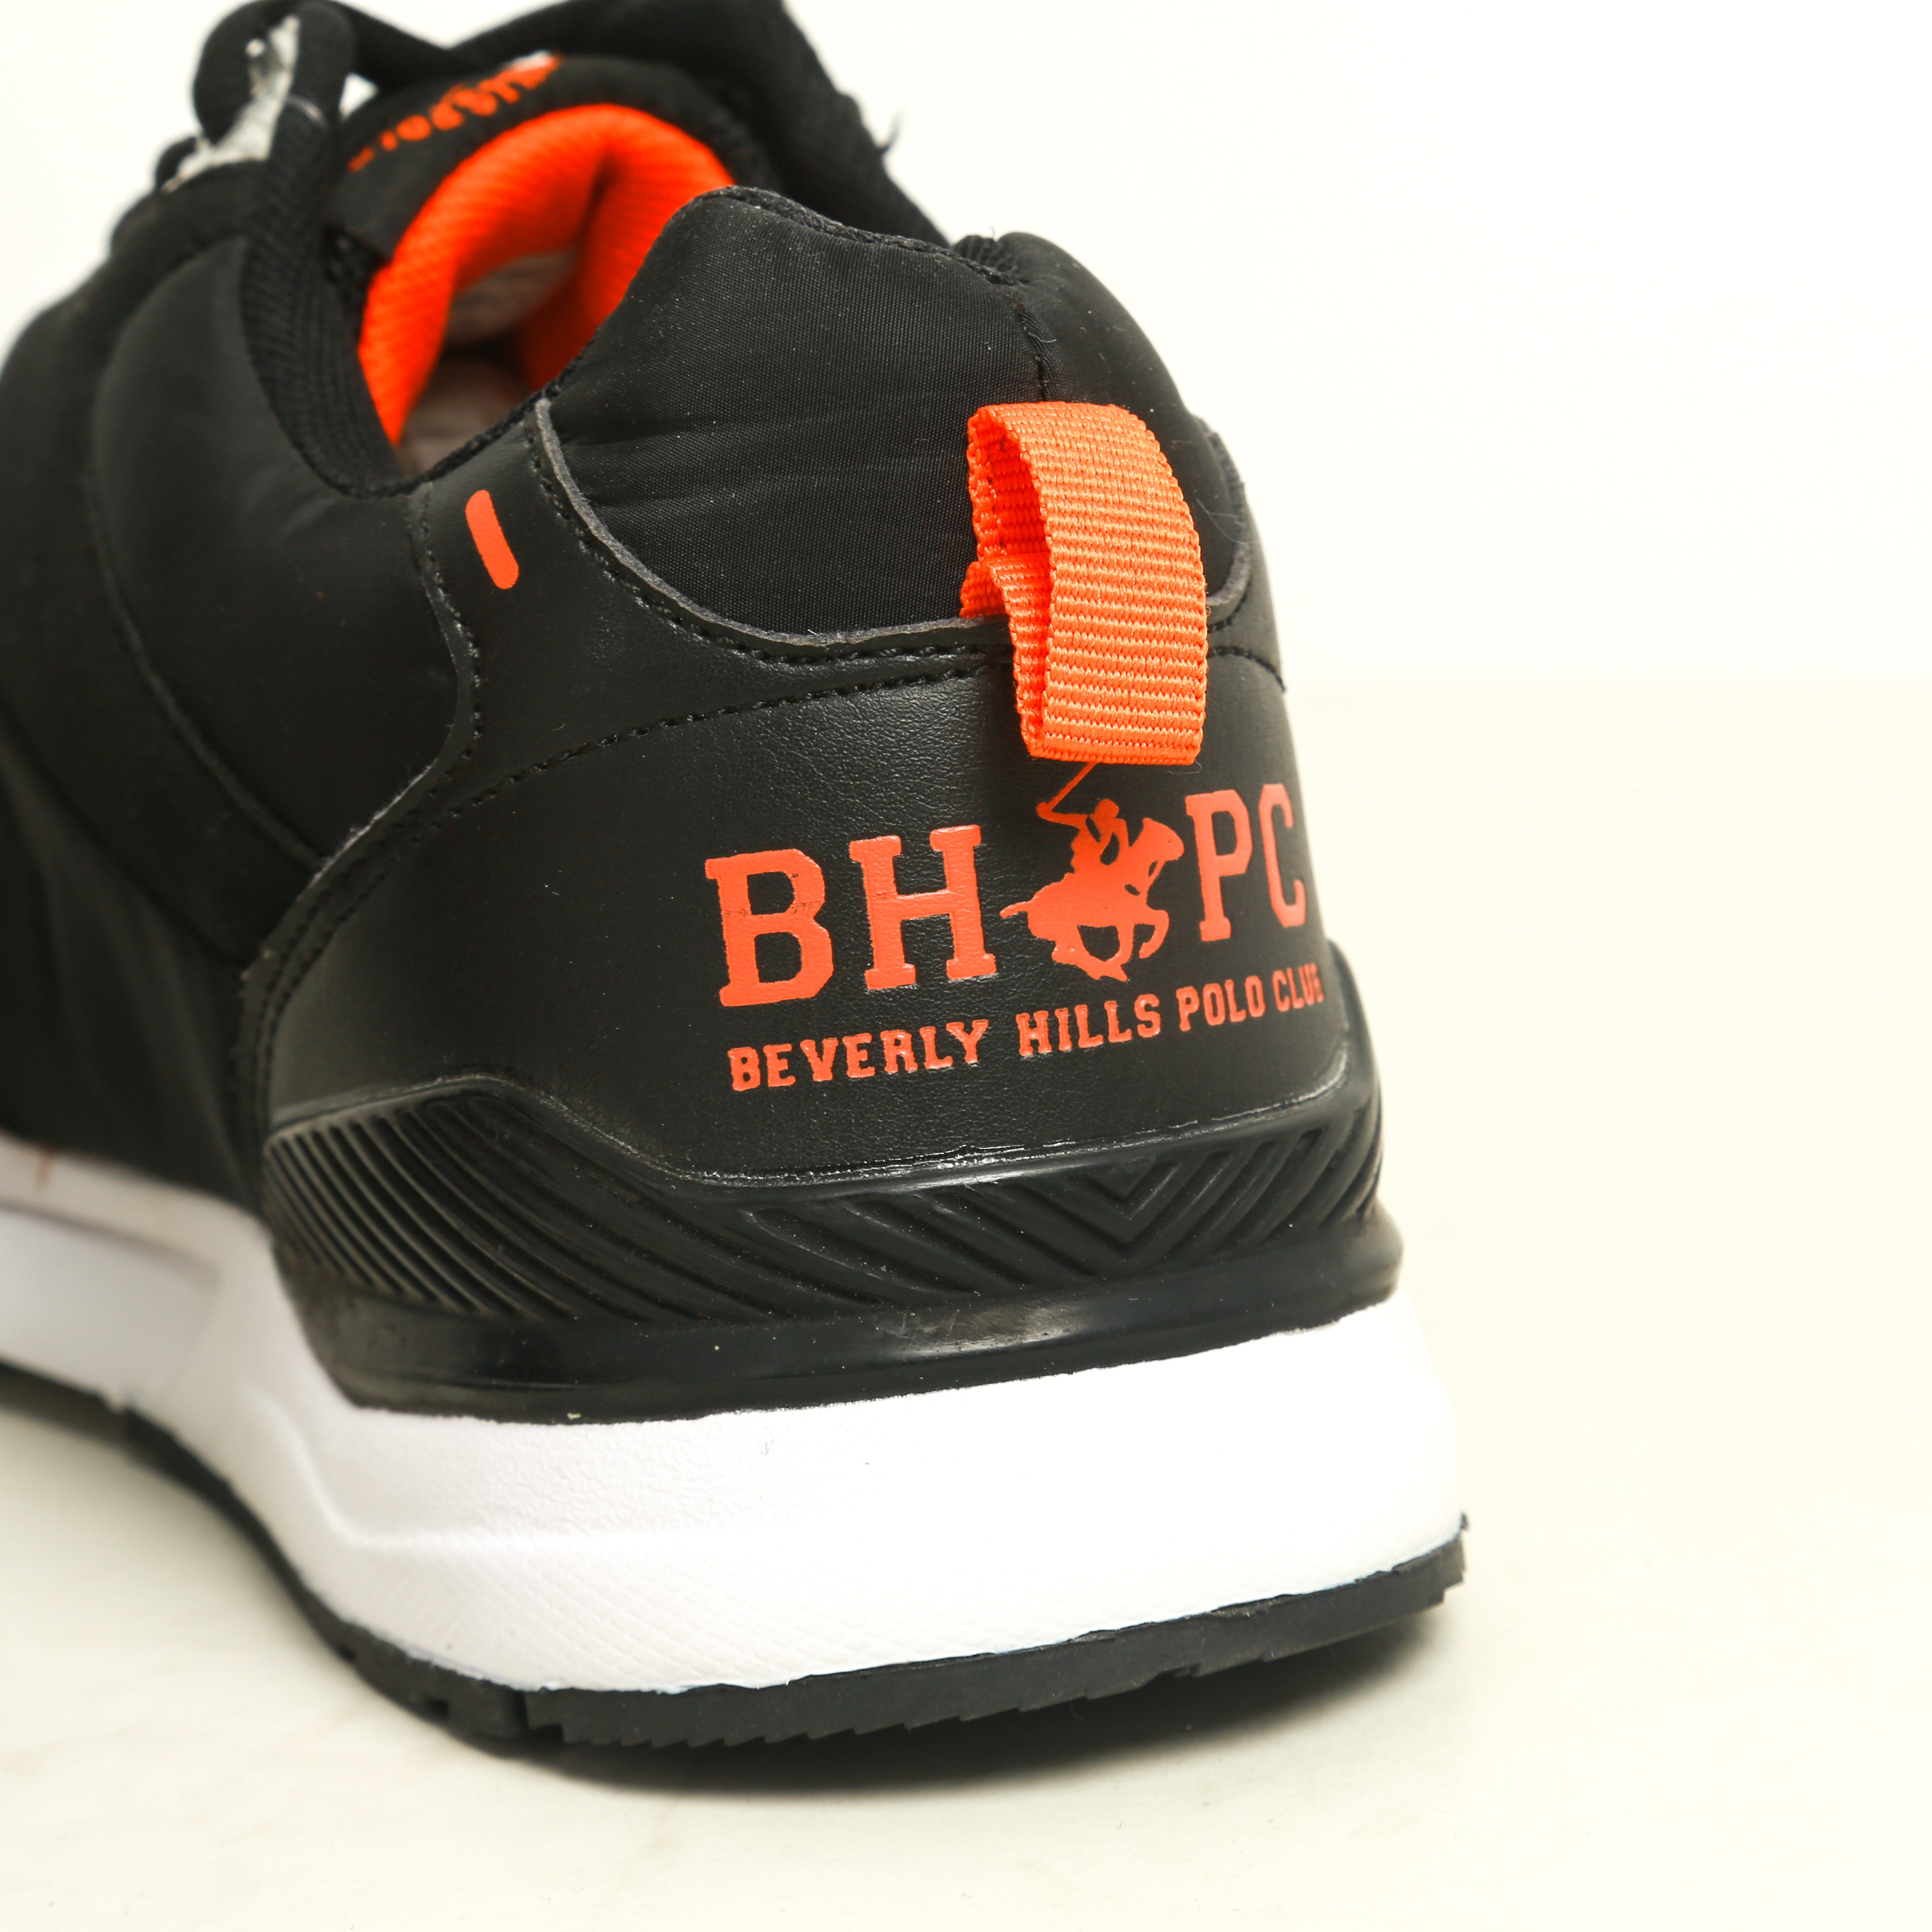 Sneakers Homme - Noir / Orange